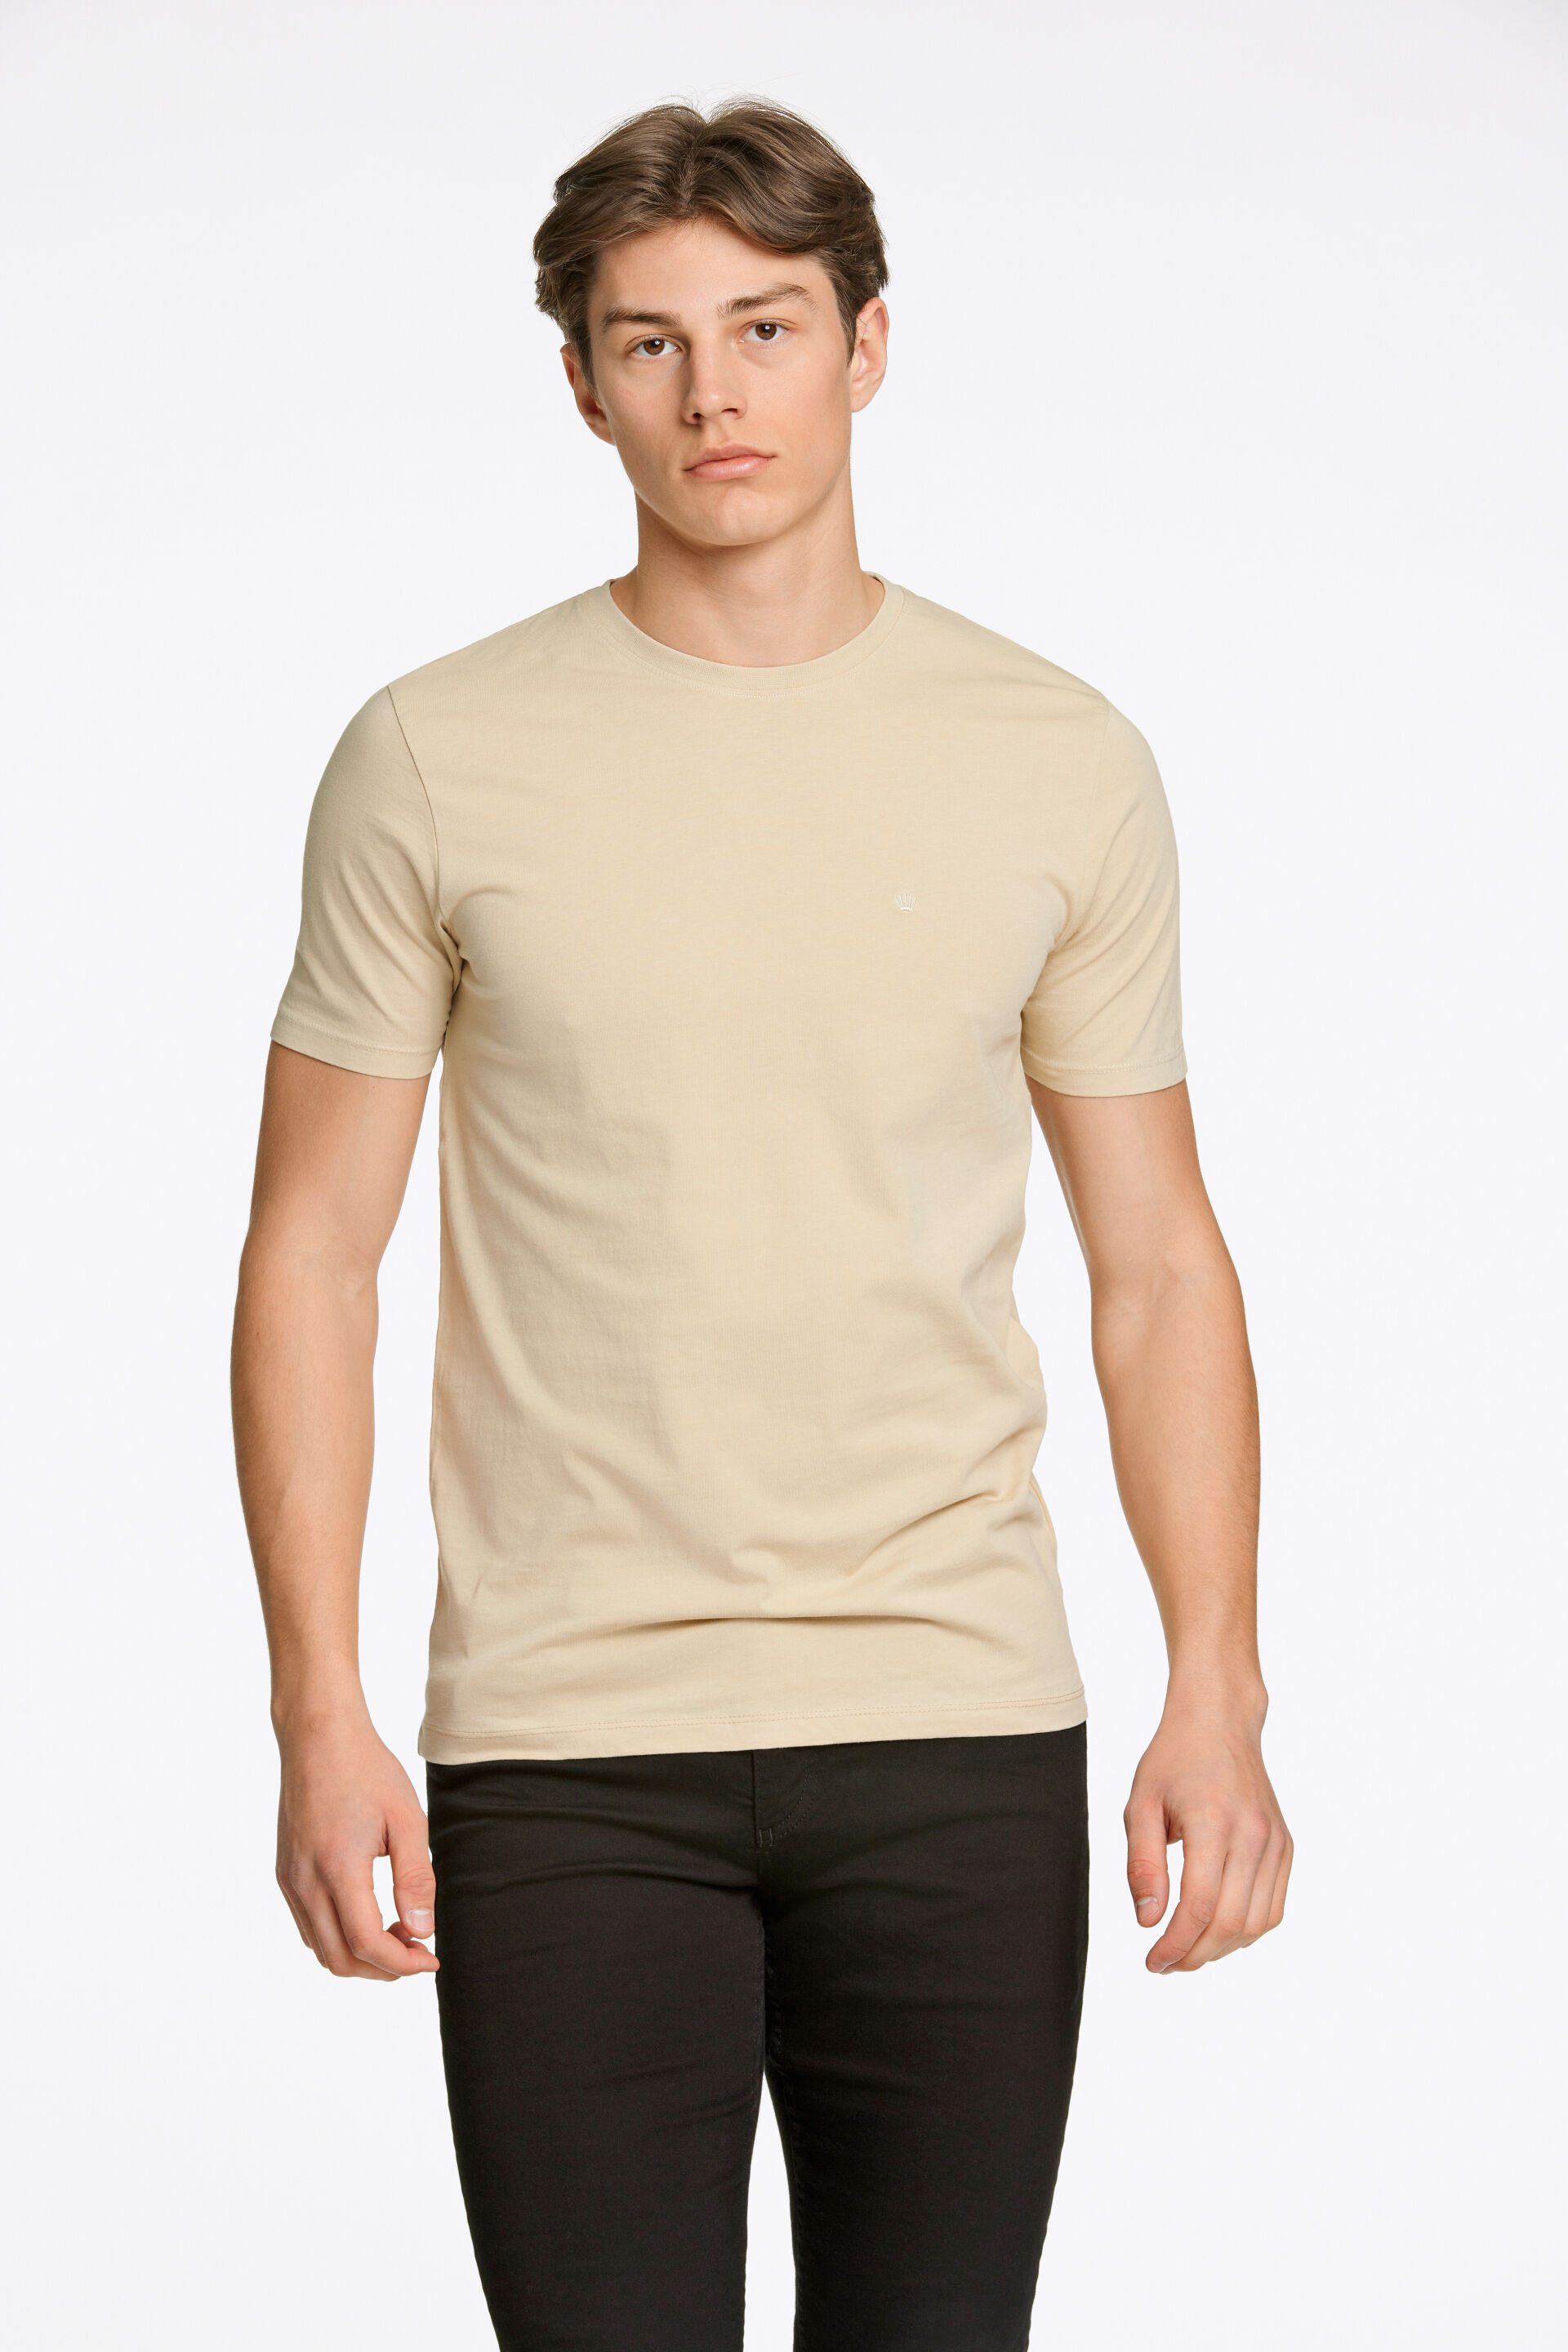 Junk de Luxe  T-shirt Sand 60-40005